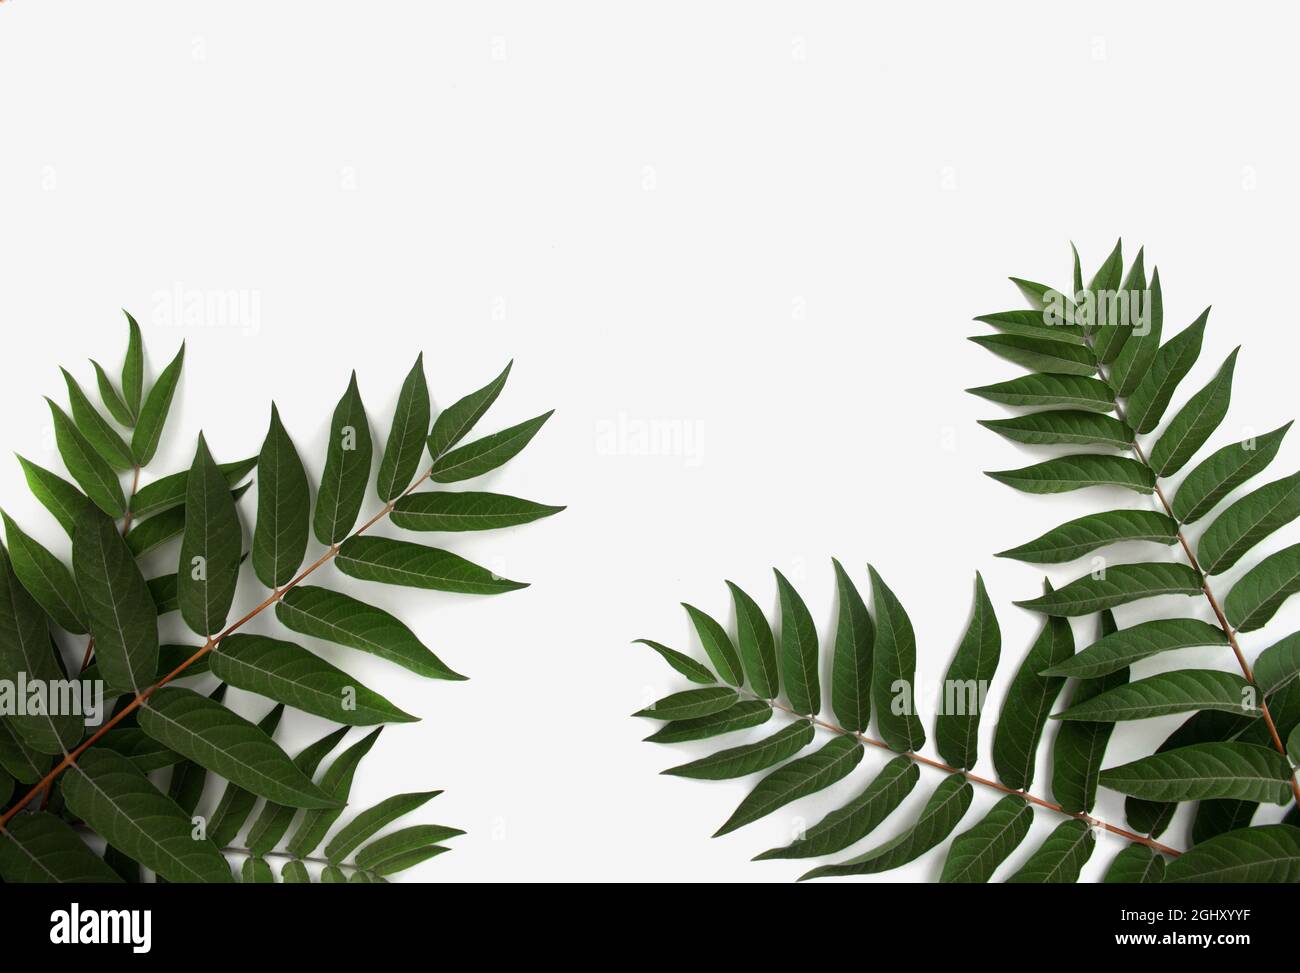 branche de plante vivante verte sur fond blanc Banque D'Images